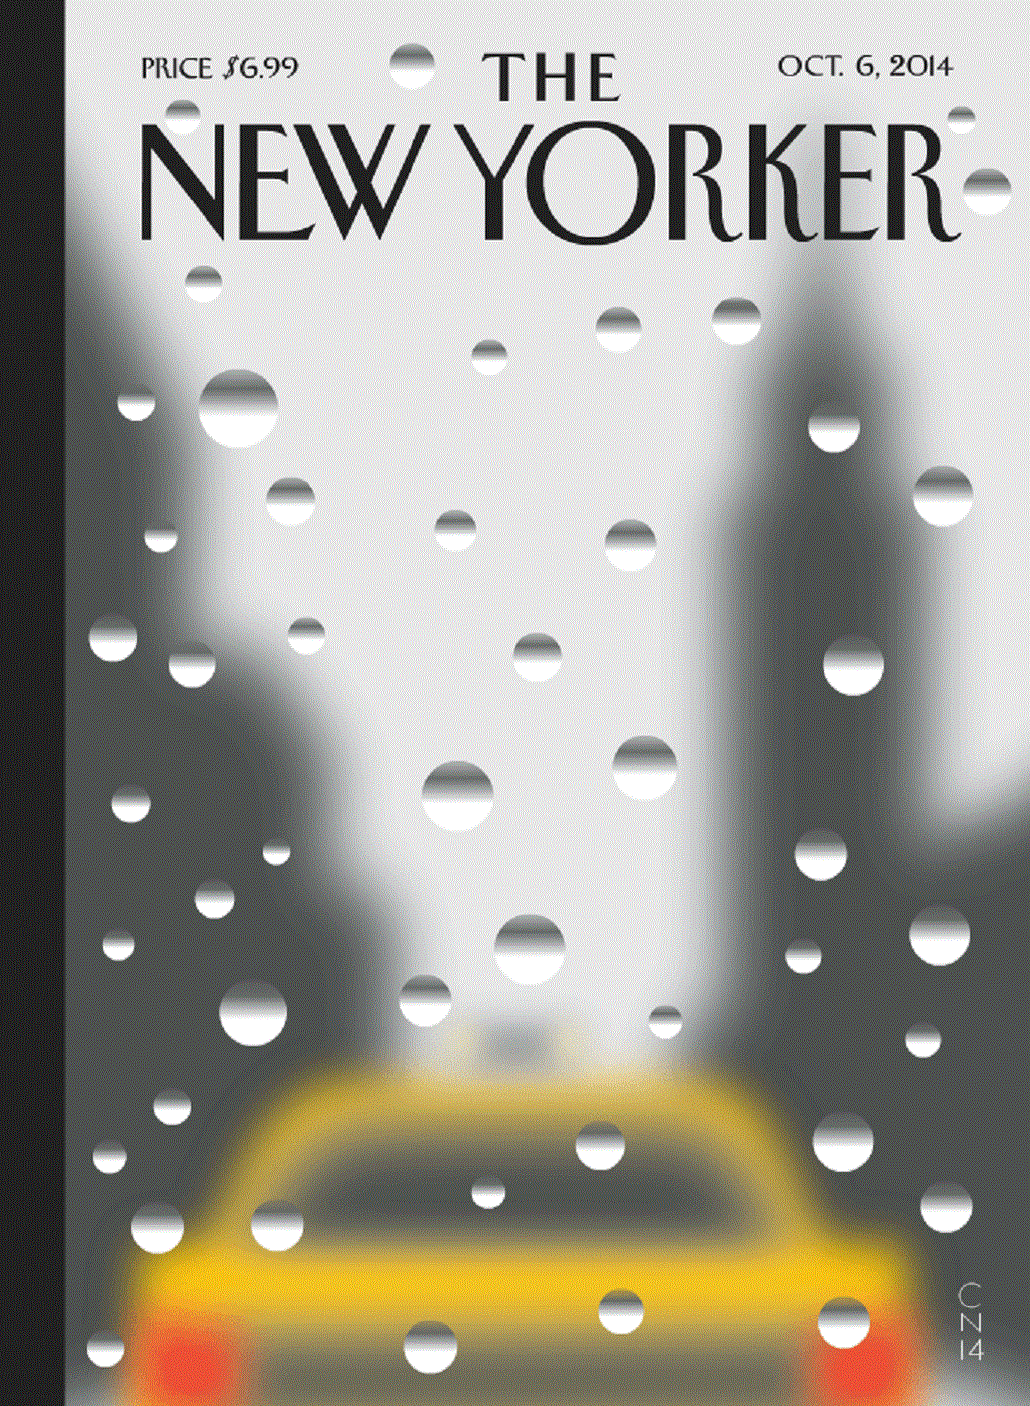 El futuro ya llegó: mirá la imagen animada que pondrá The New Yorker en su portada